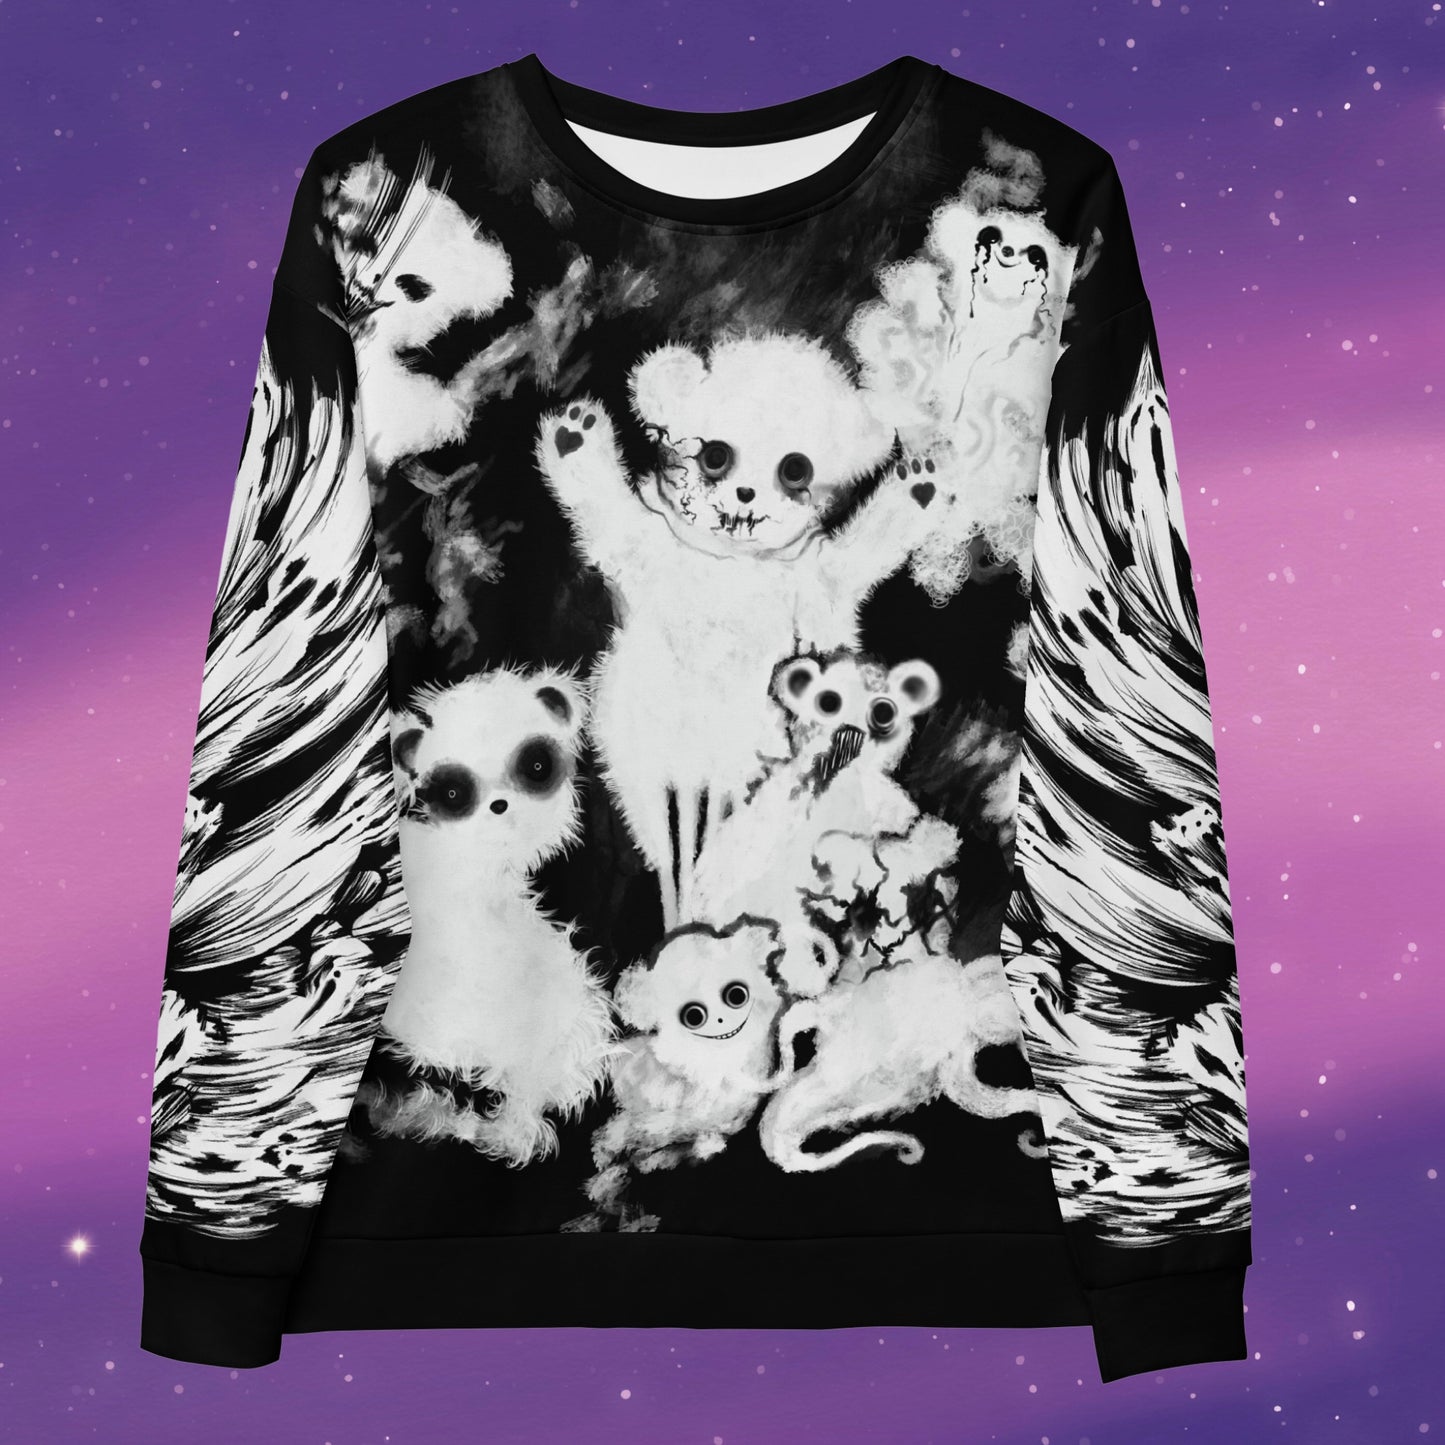 Yami Kawaii Teddy Bear sweatshirt soft goth sweatshirt creepy cute fashion style baggy goth sweatshirt.